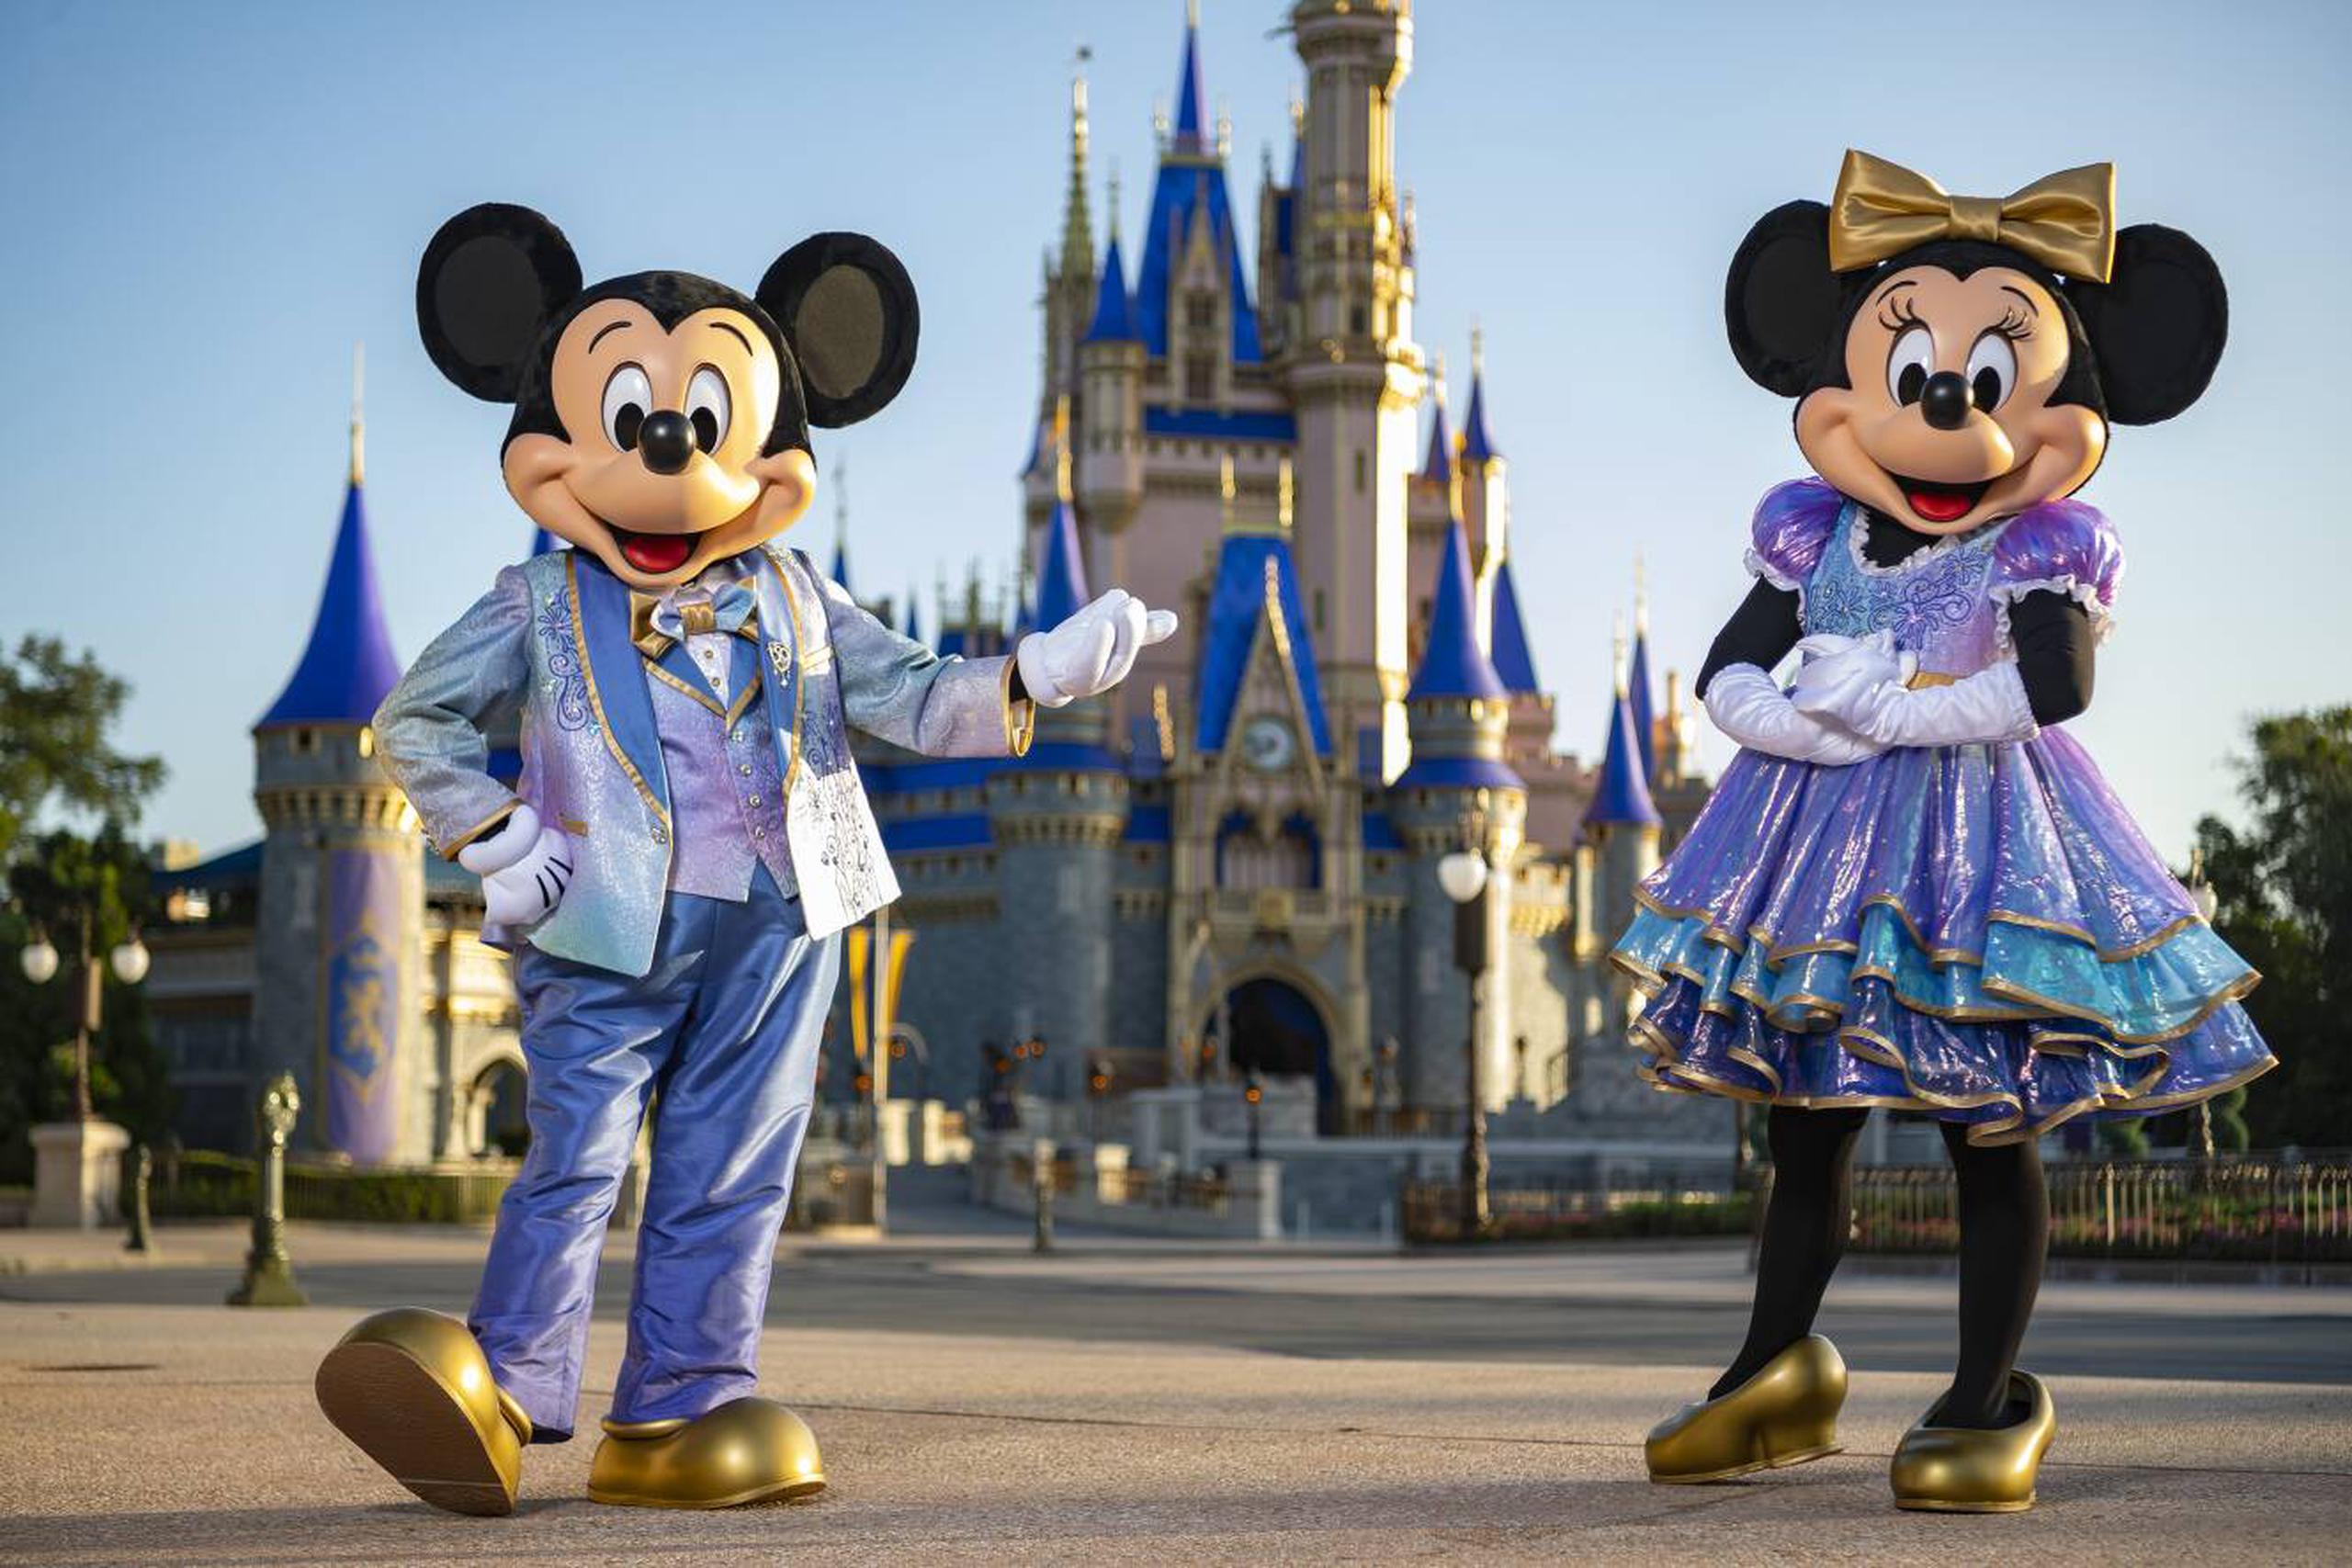 Los personajes, incluidos los anfitriones "Mickey" y "Minnie", llevarán vestuarios en tonos tornasol.